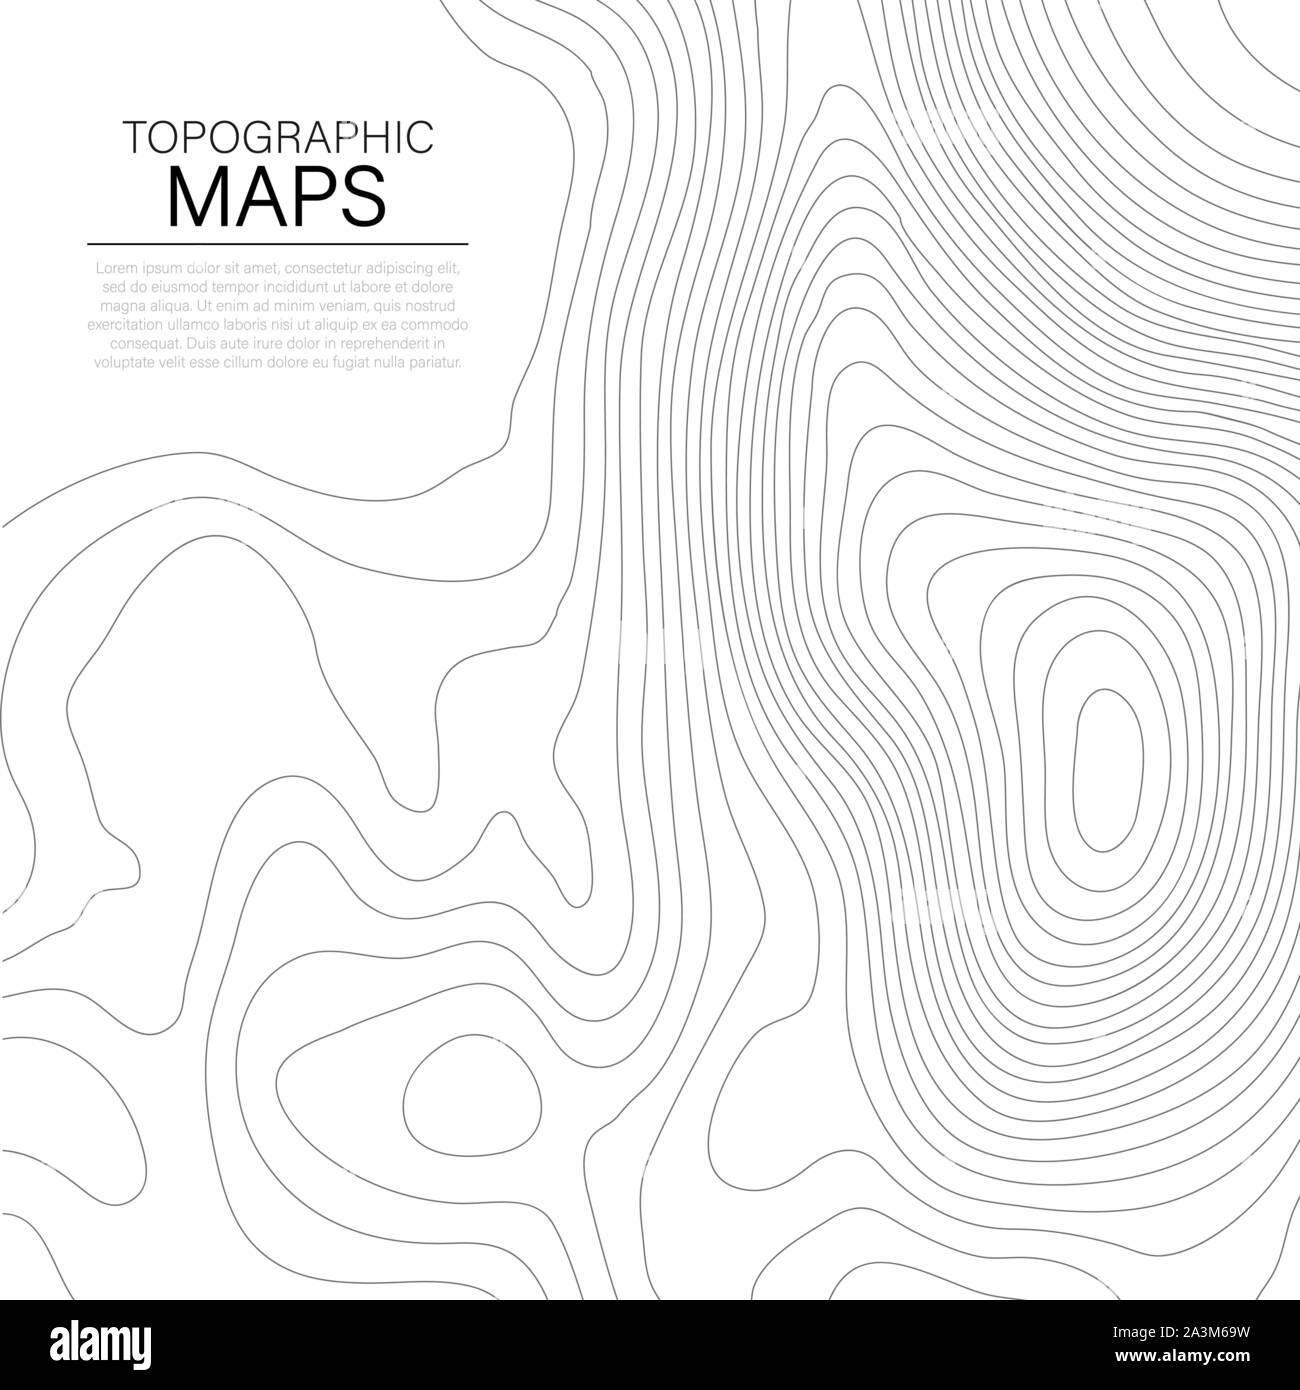 Mopographic Karte. Die stilisierte Höhe der topographischen Kontur in Linien und Konturen. Vector lieferbar Abbildung: Stock Vektor